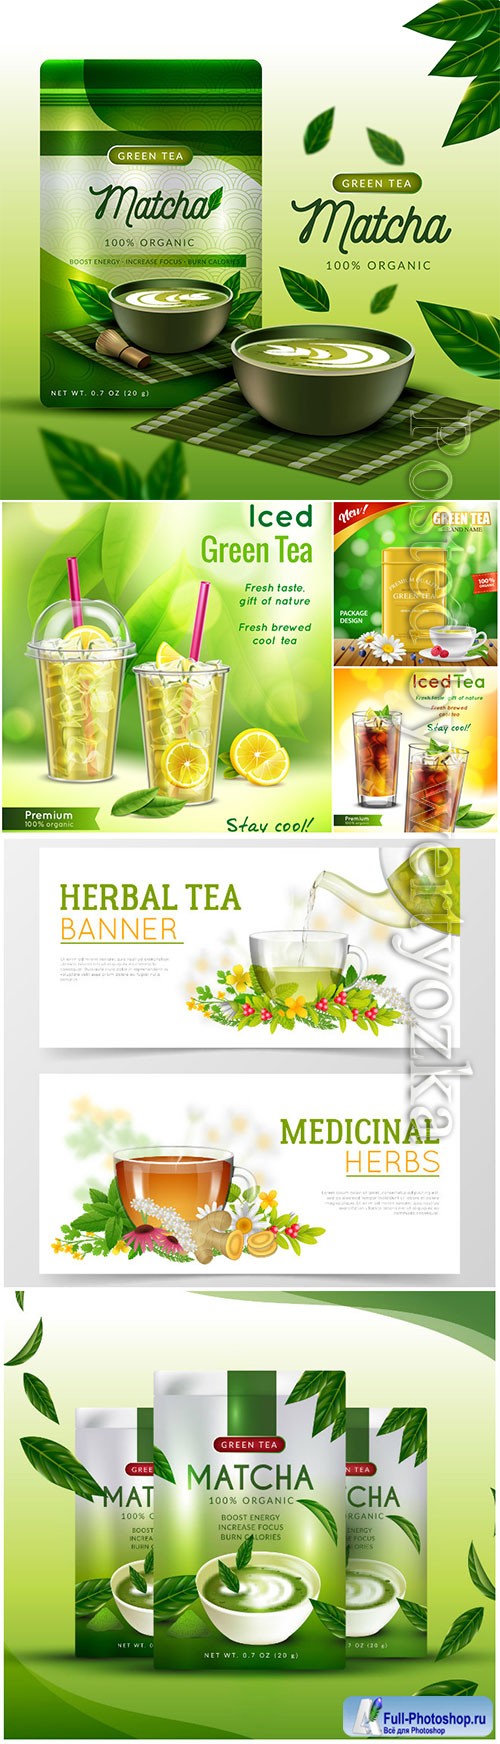 Realistic matcha tea ad concept vector illustration